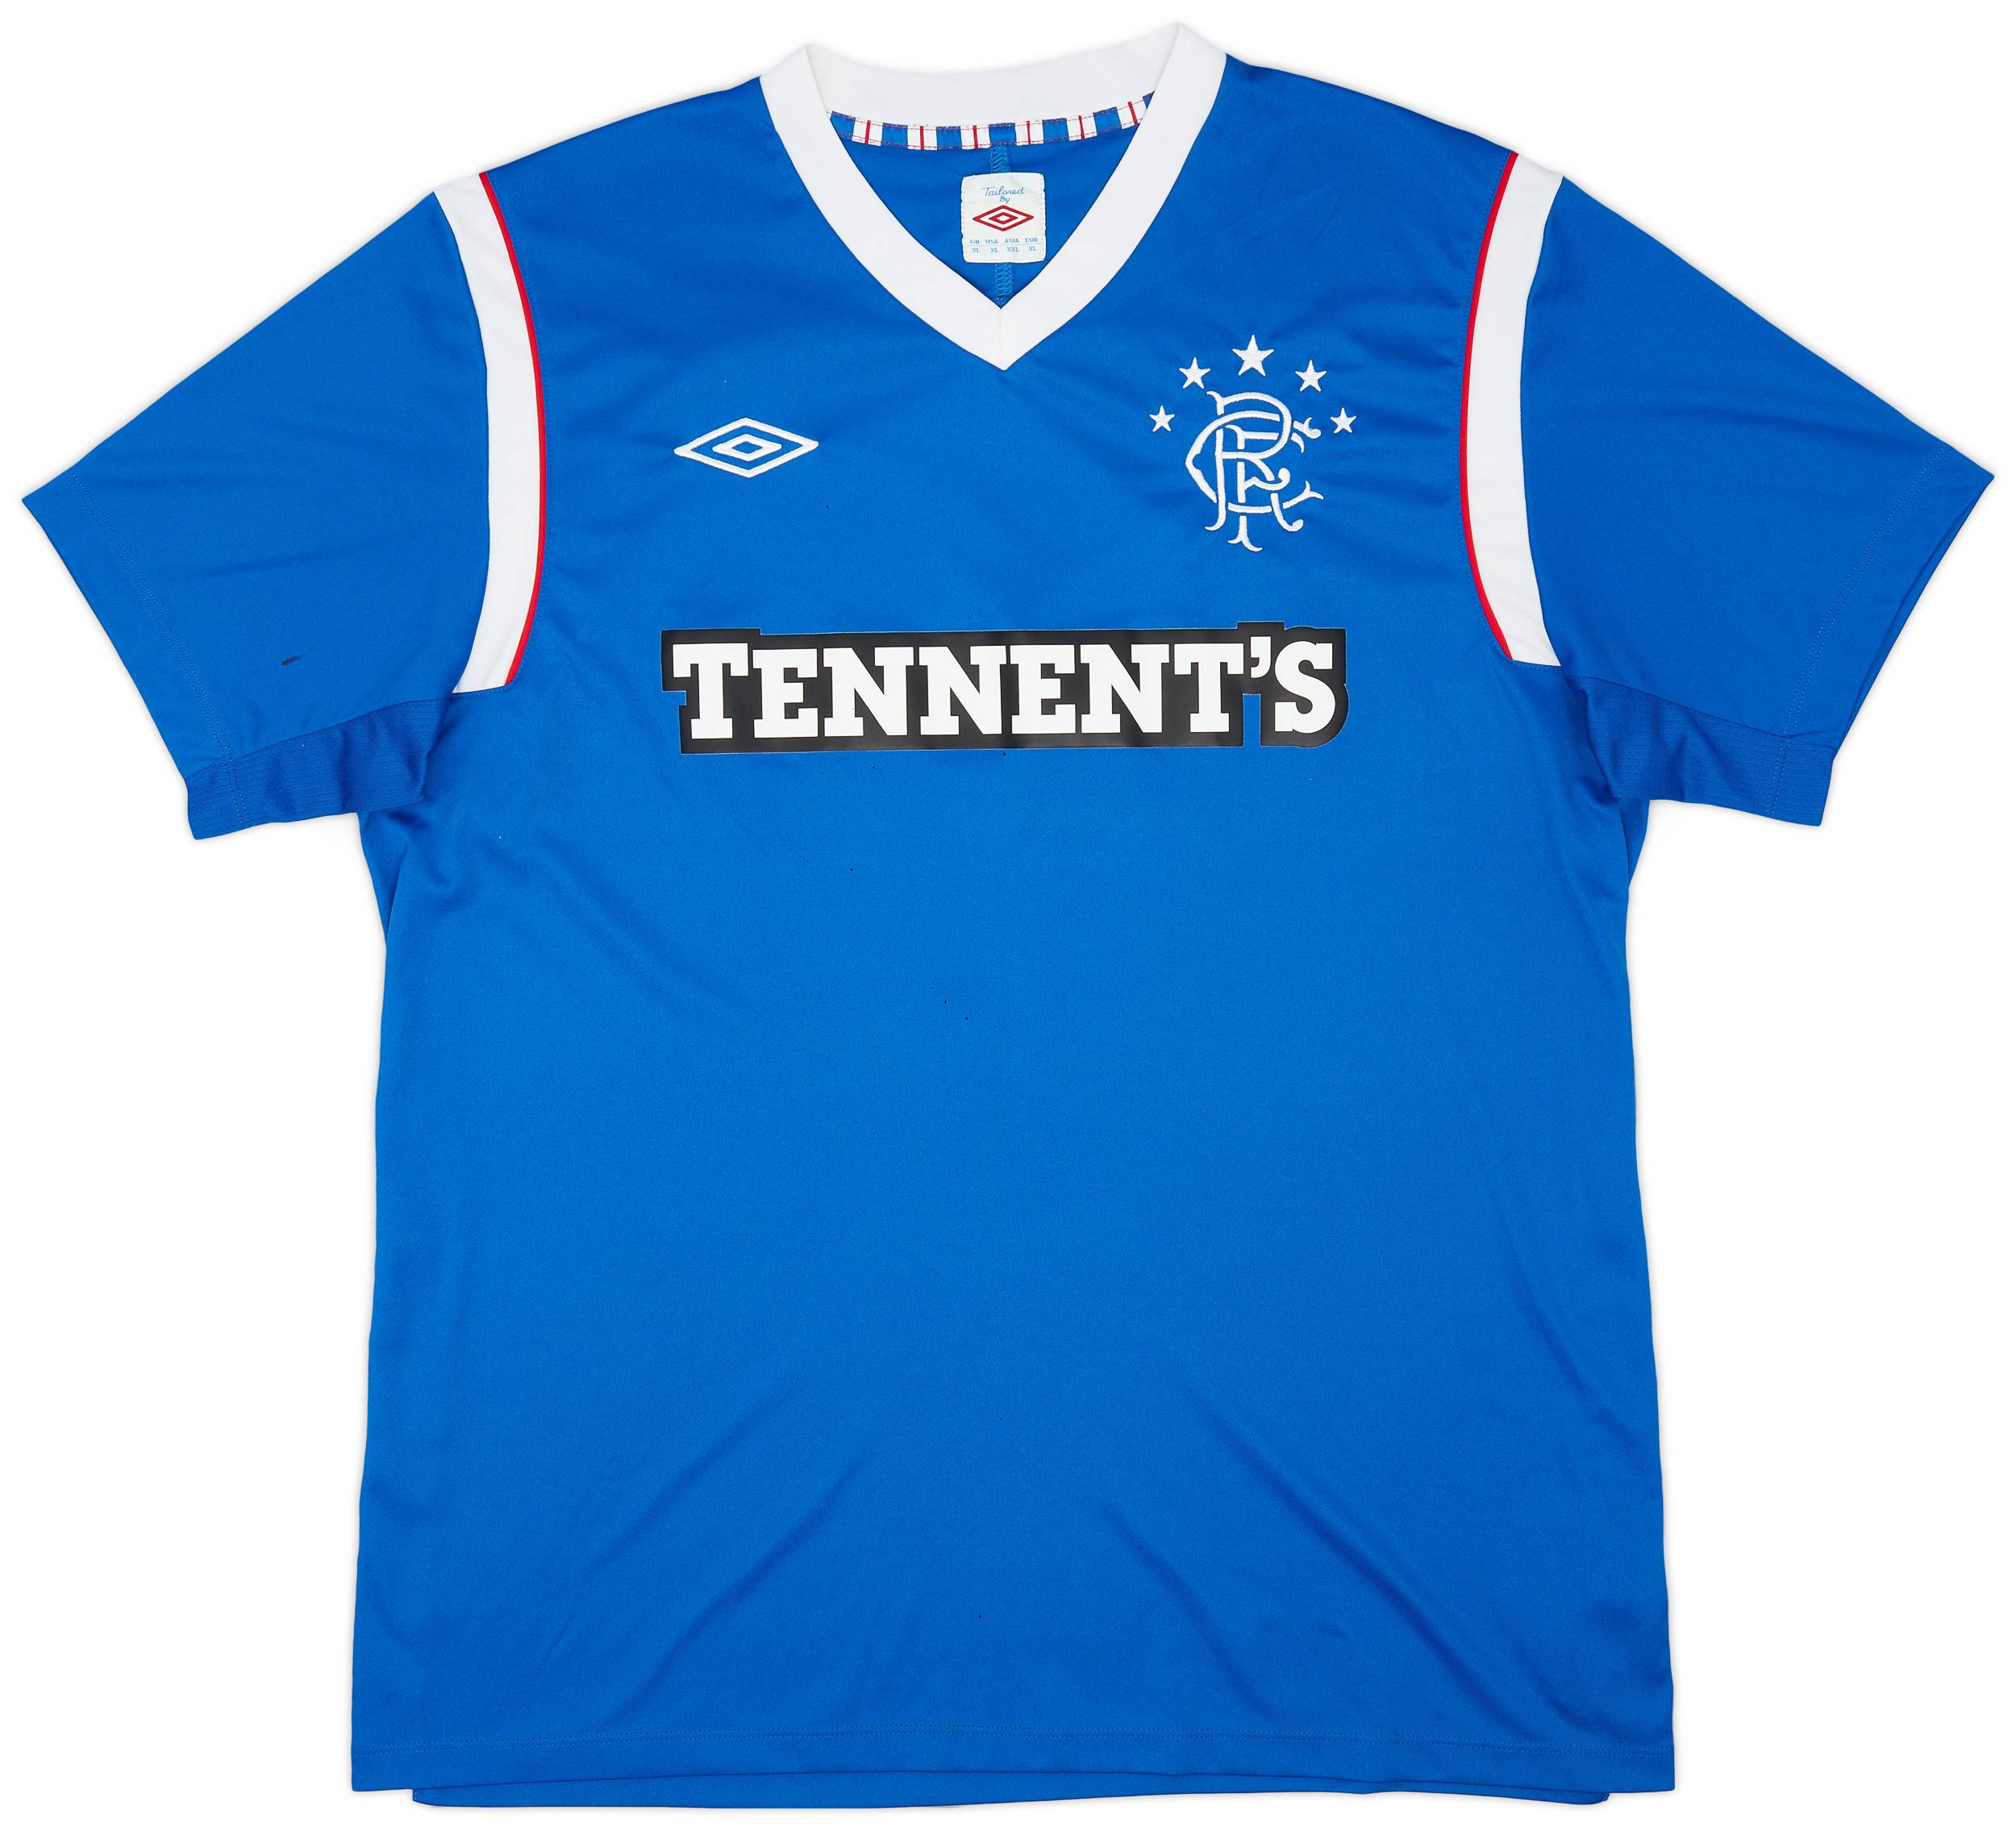 2011-12 Rangers Home Shirt - 8/10 - (XL)